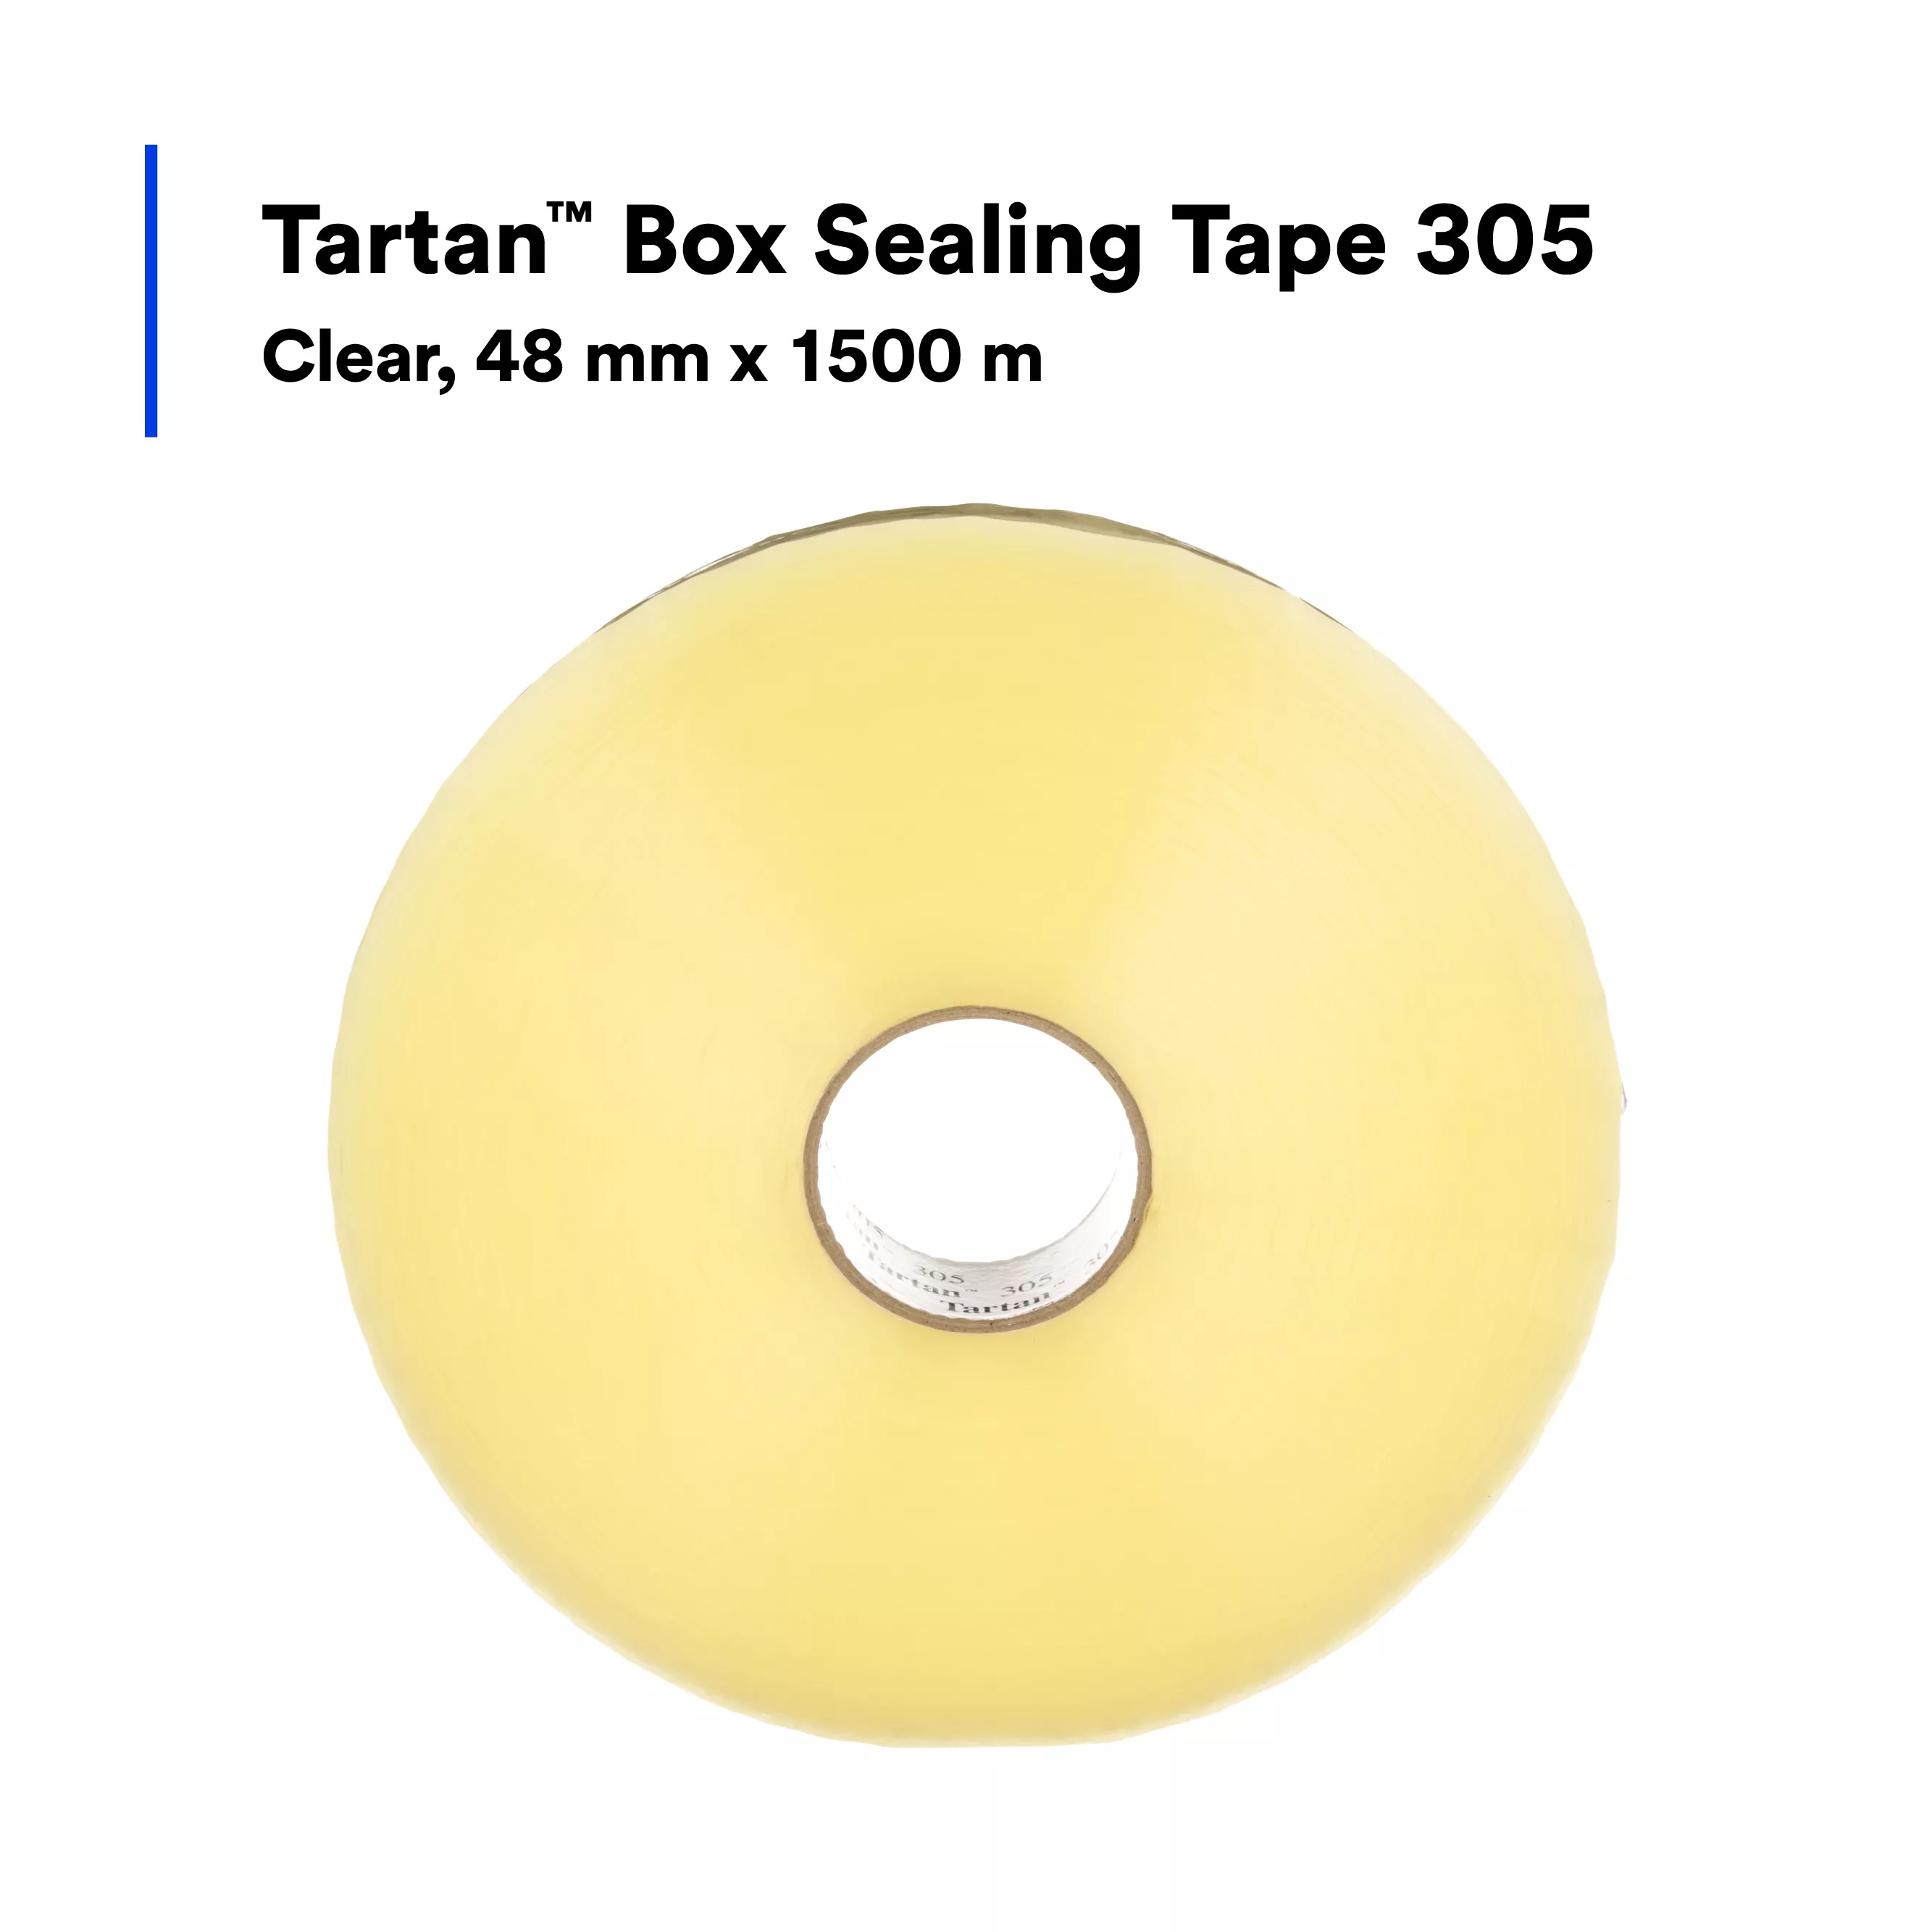 Product Number 305 | Tartan™ Box Sealing Tape 305